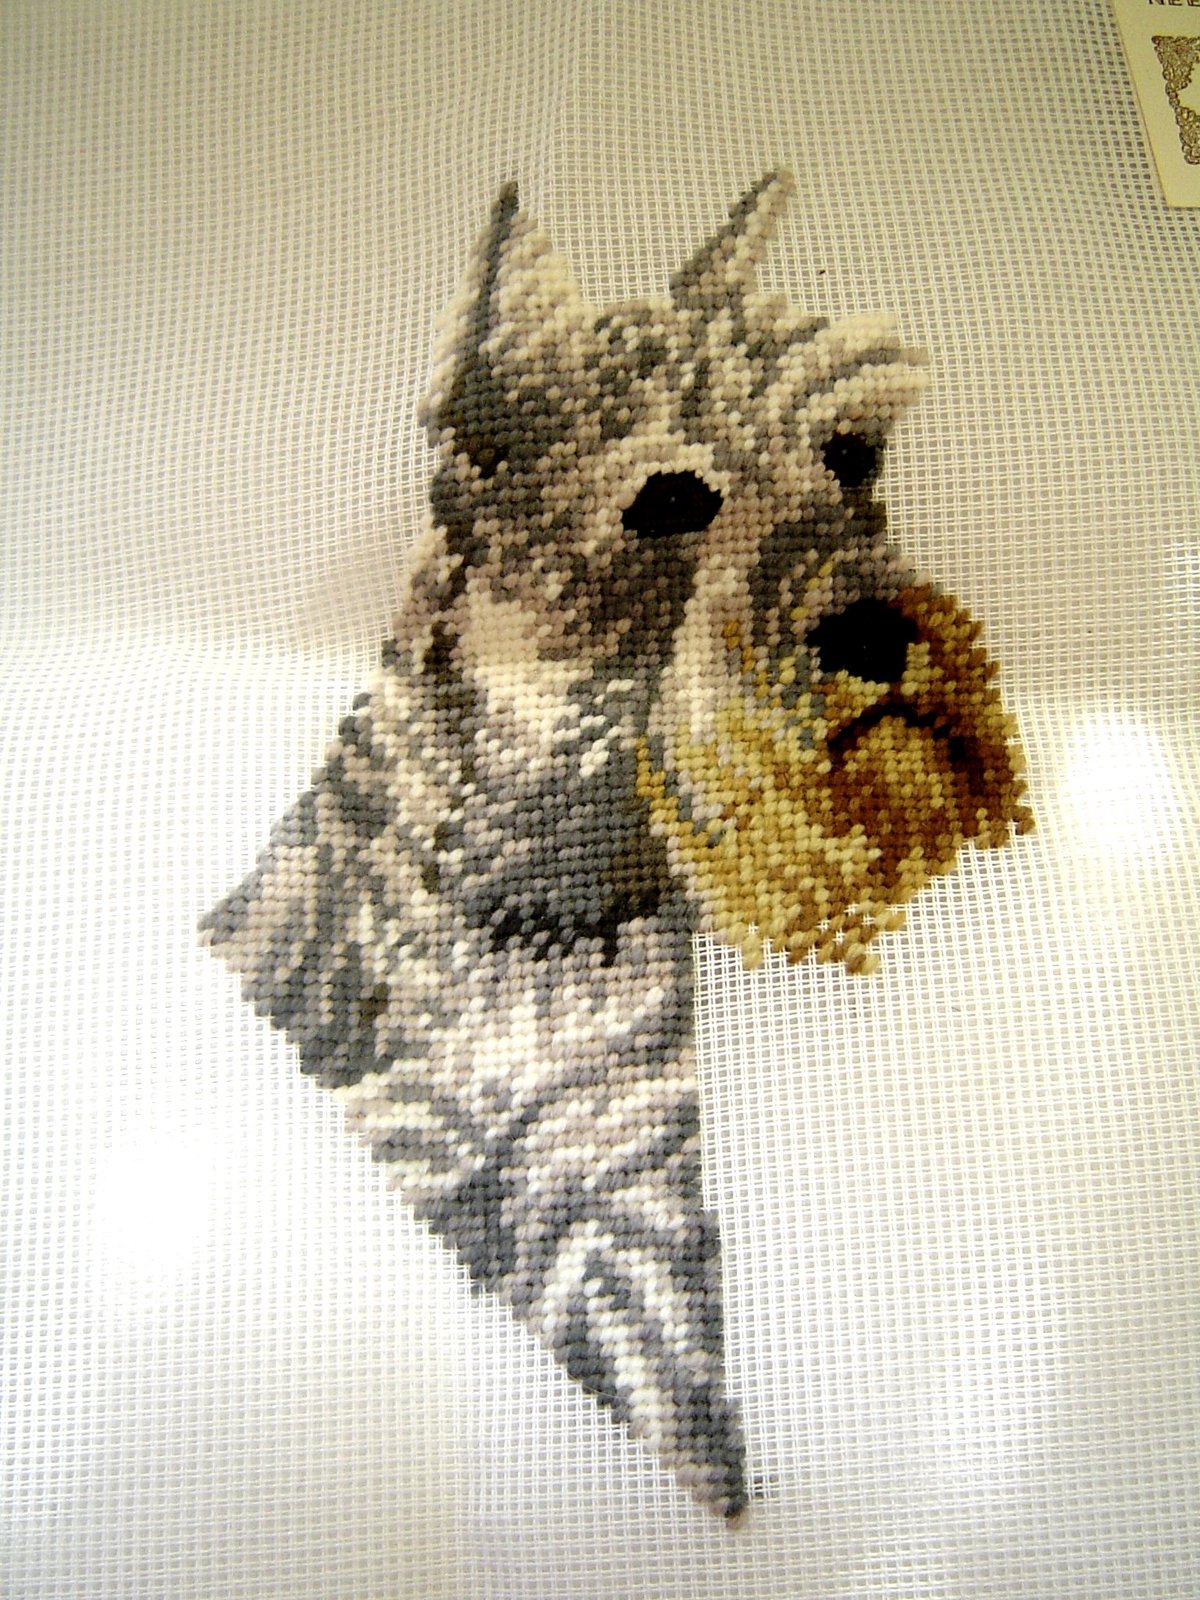 Madeira Luxury Needlepoint Canvas Started Al Weiss Schnauzer Dog Design 16 x16  - $29.99